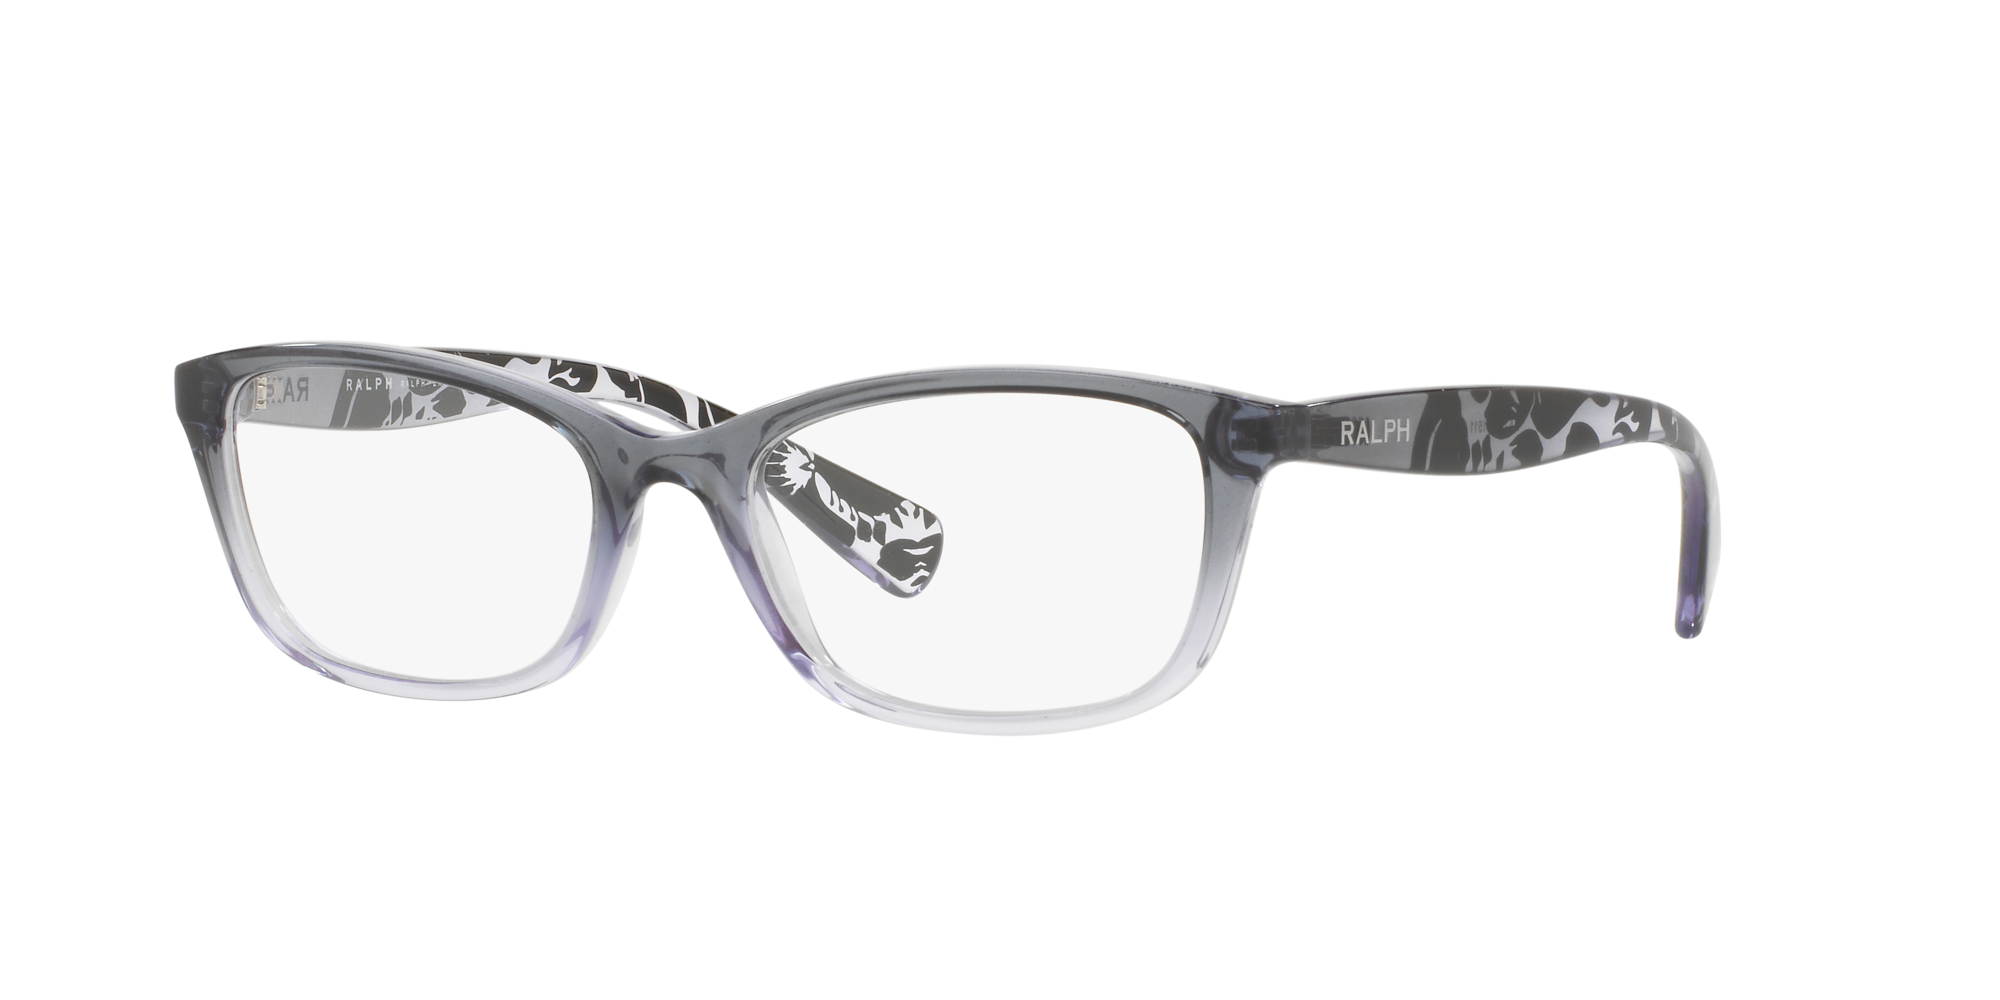 ralph lauren eyeglasses lenscrafters